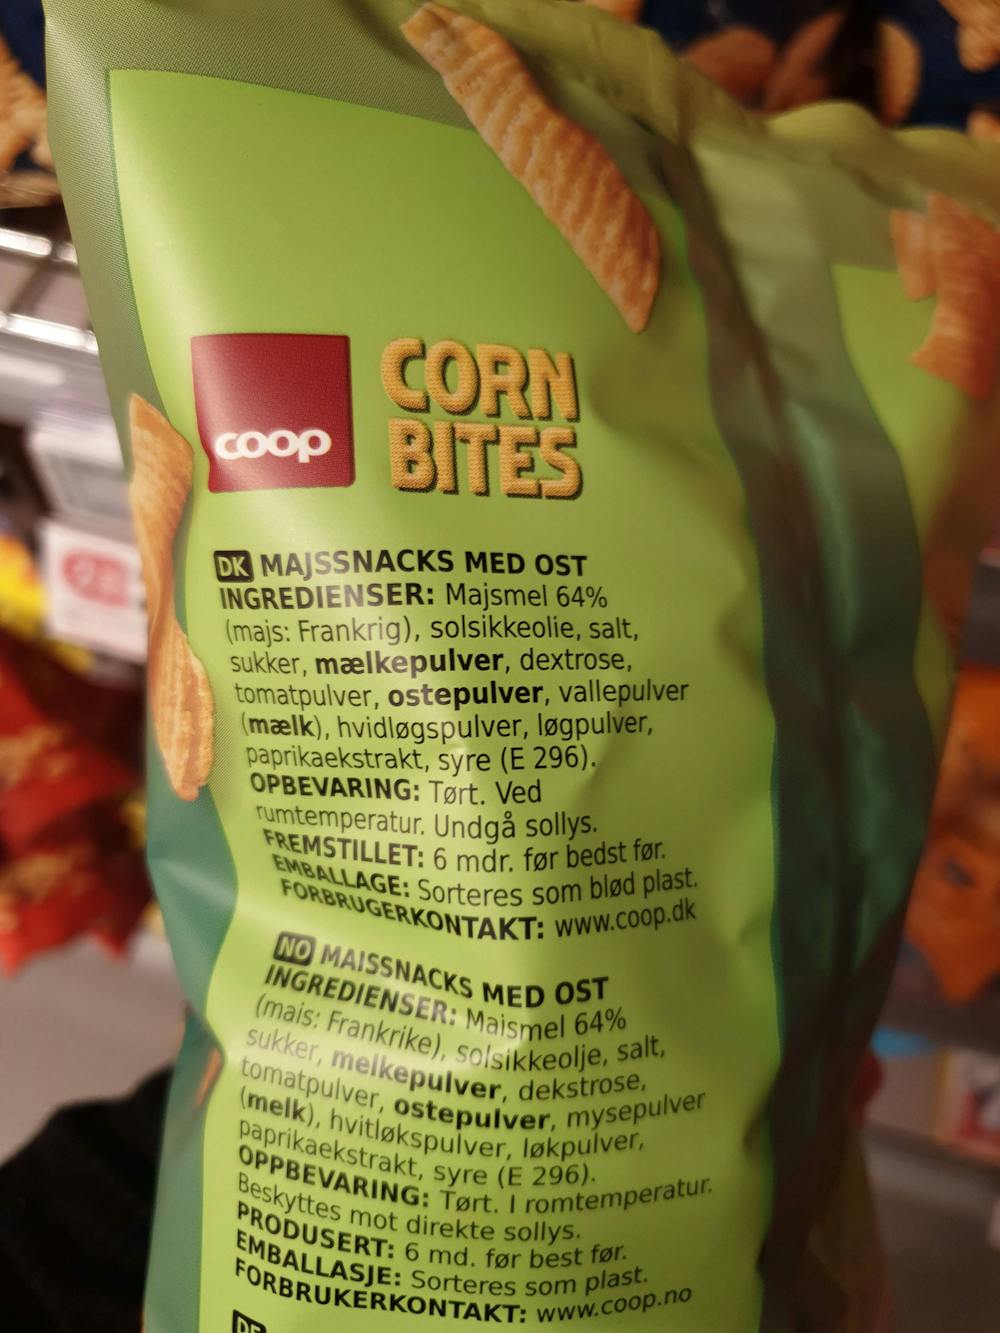 Ingredienslisten til Corn bites, med ost, Coop